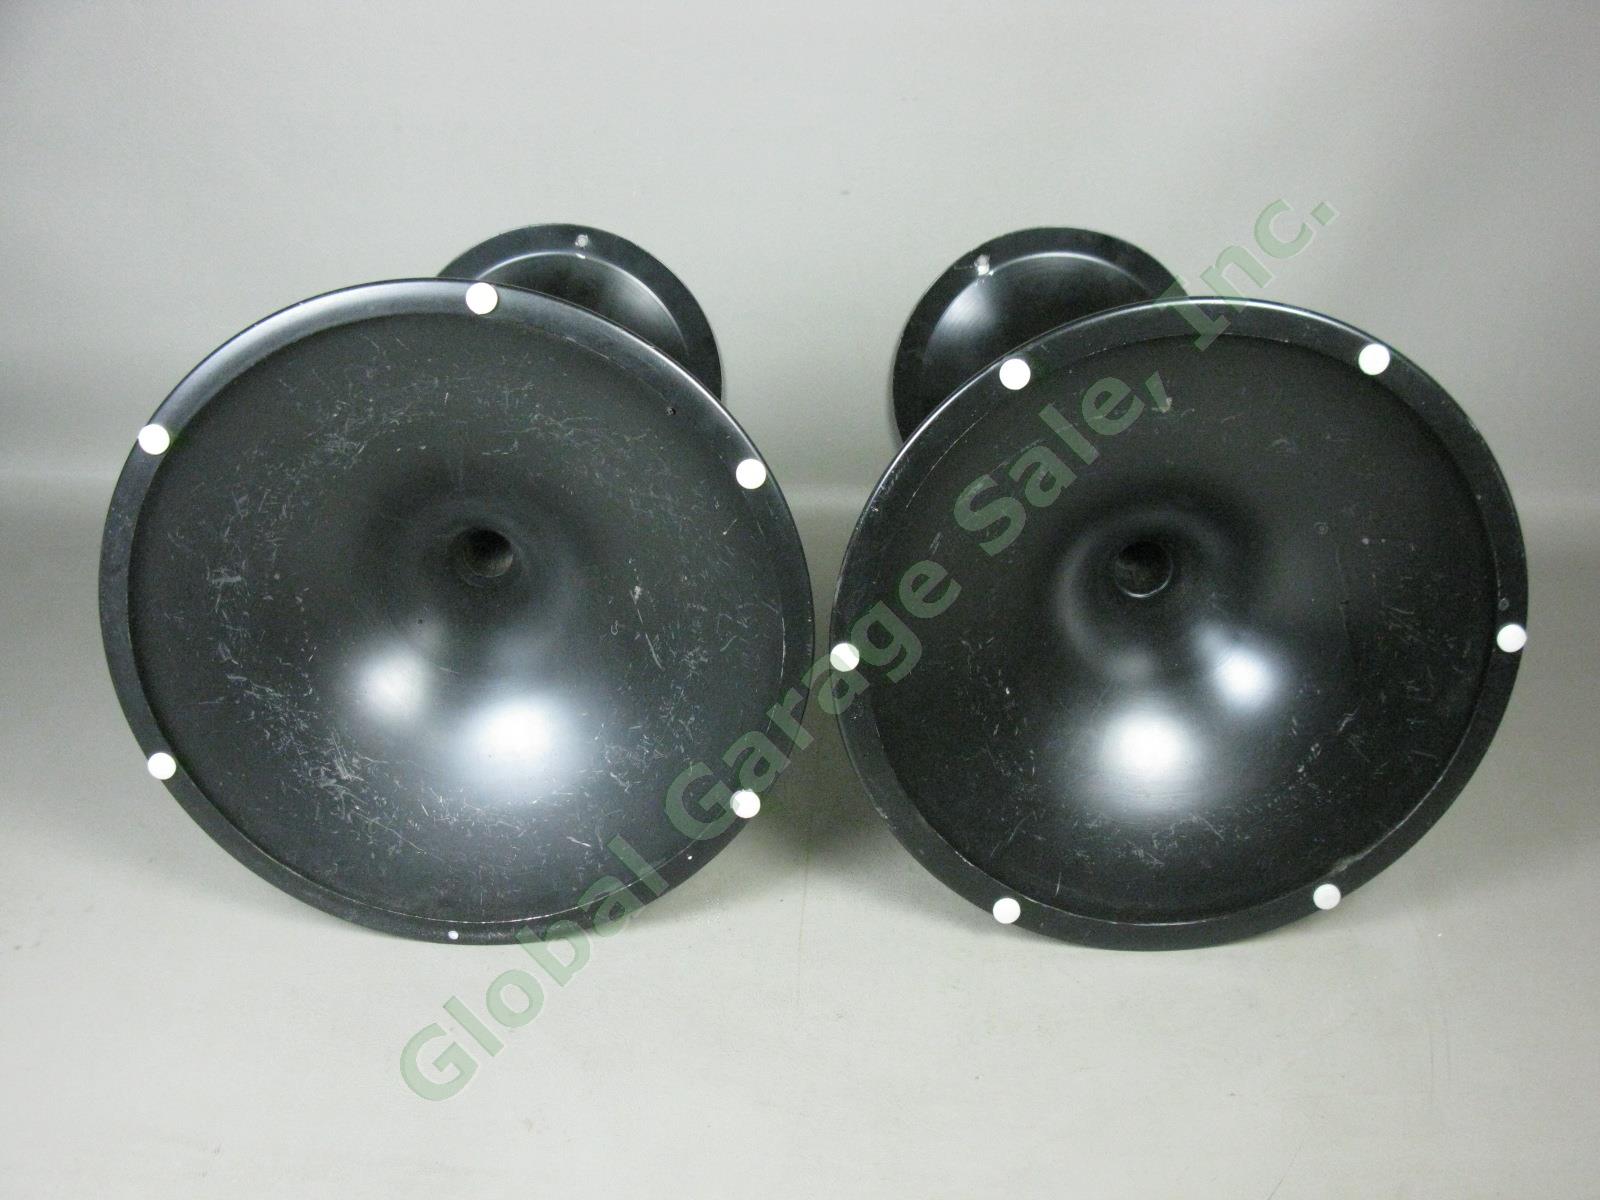 Bose 901 Black Tulip Speaker Pedestal Stands 3 Screw Holes Series II One Owner 4